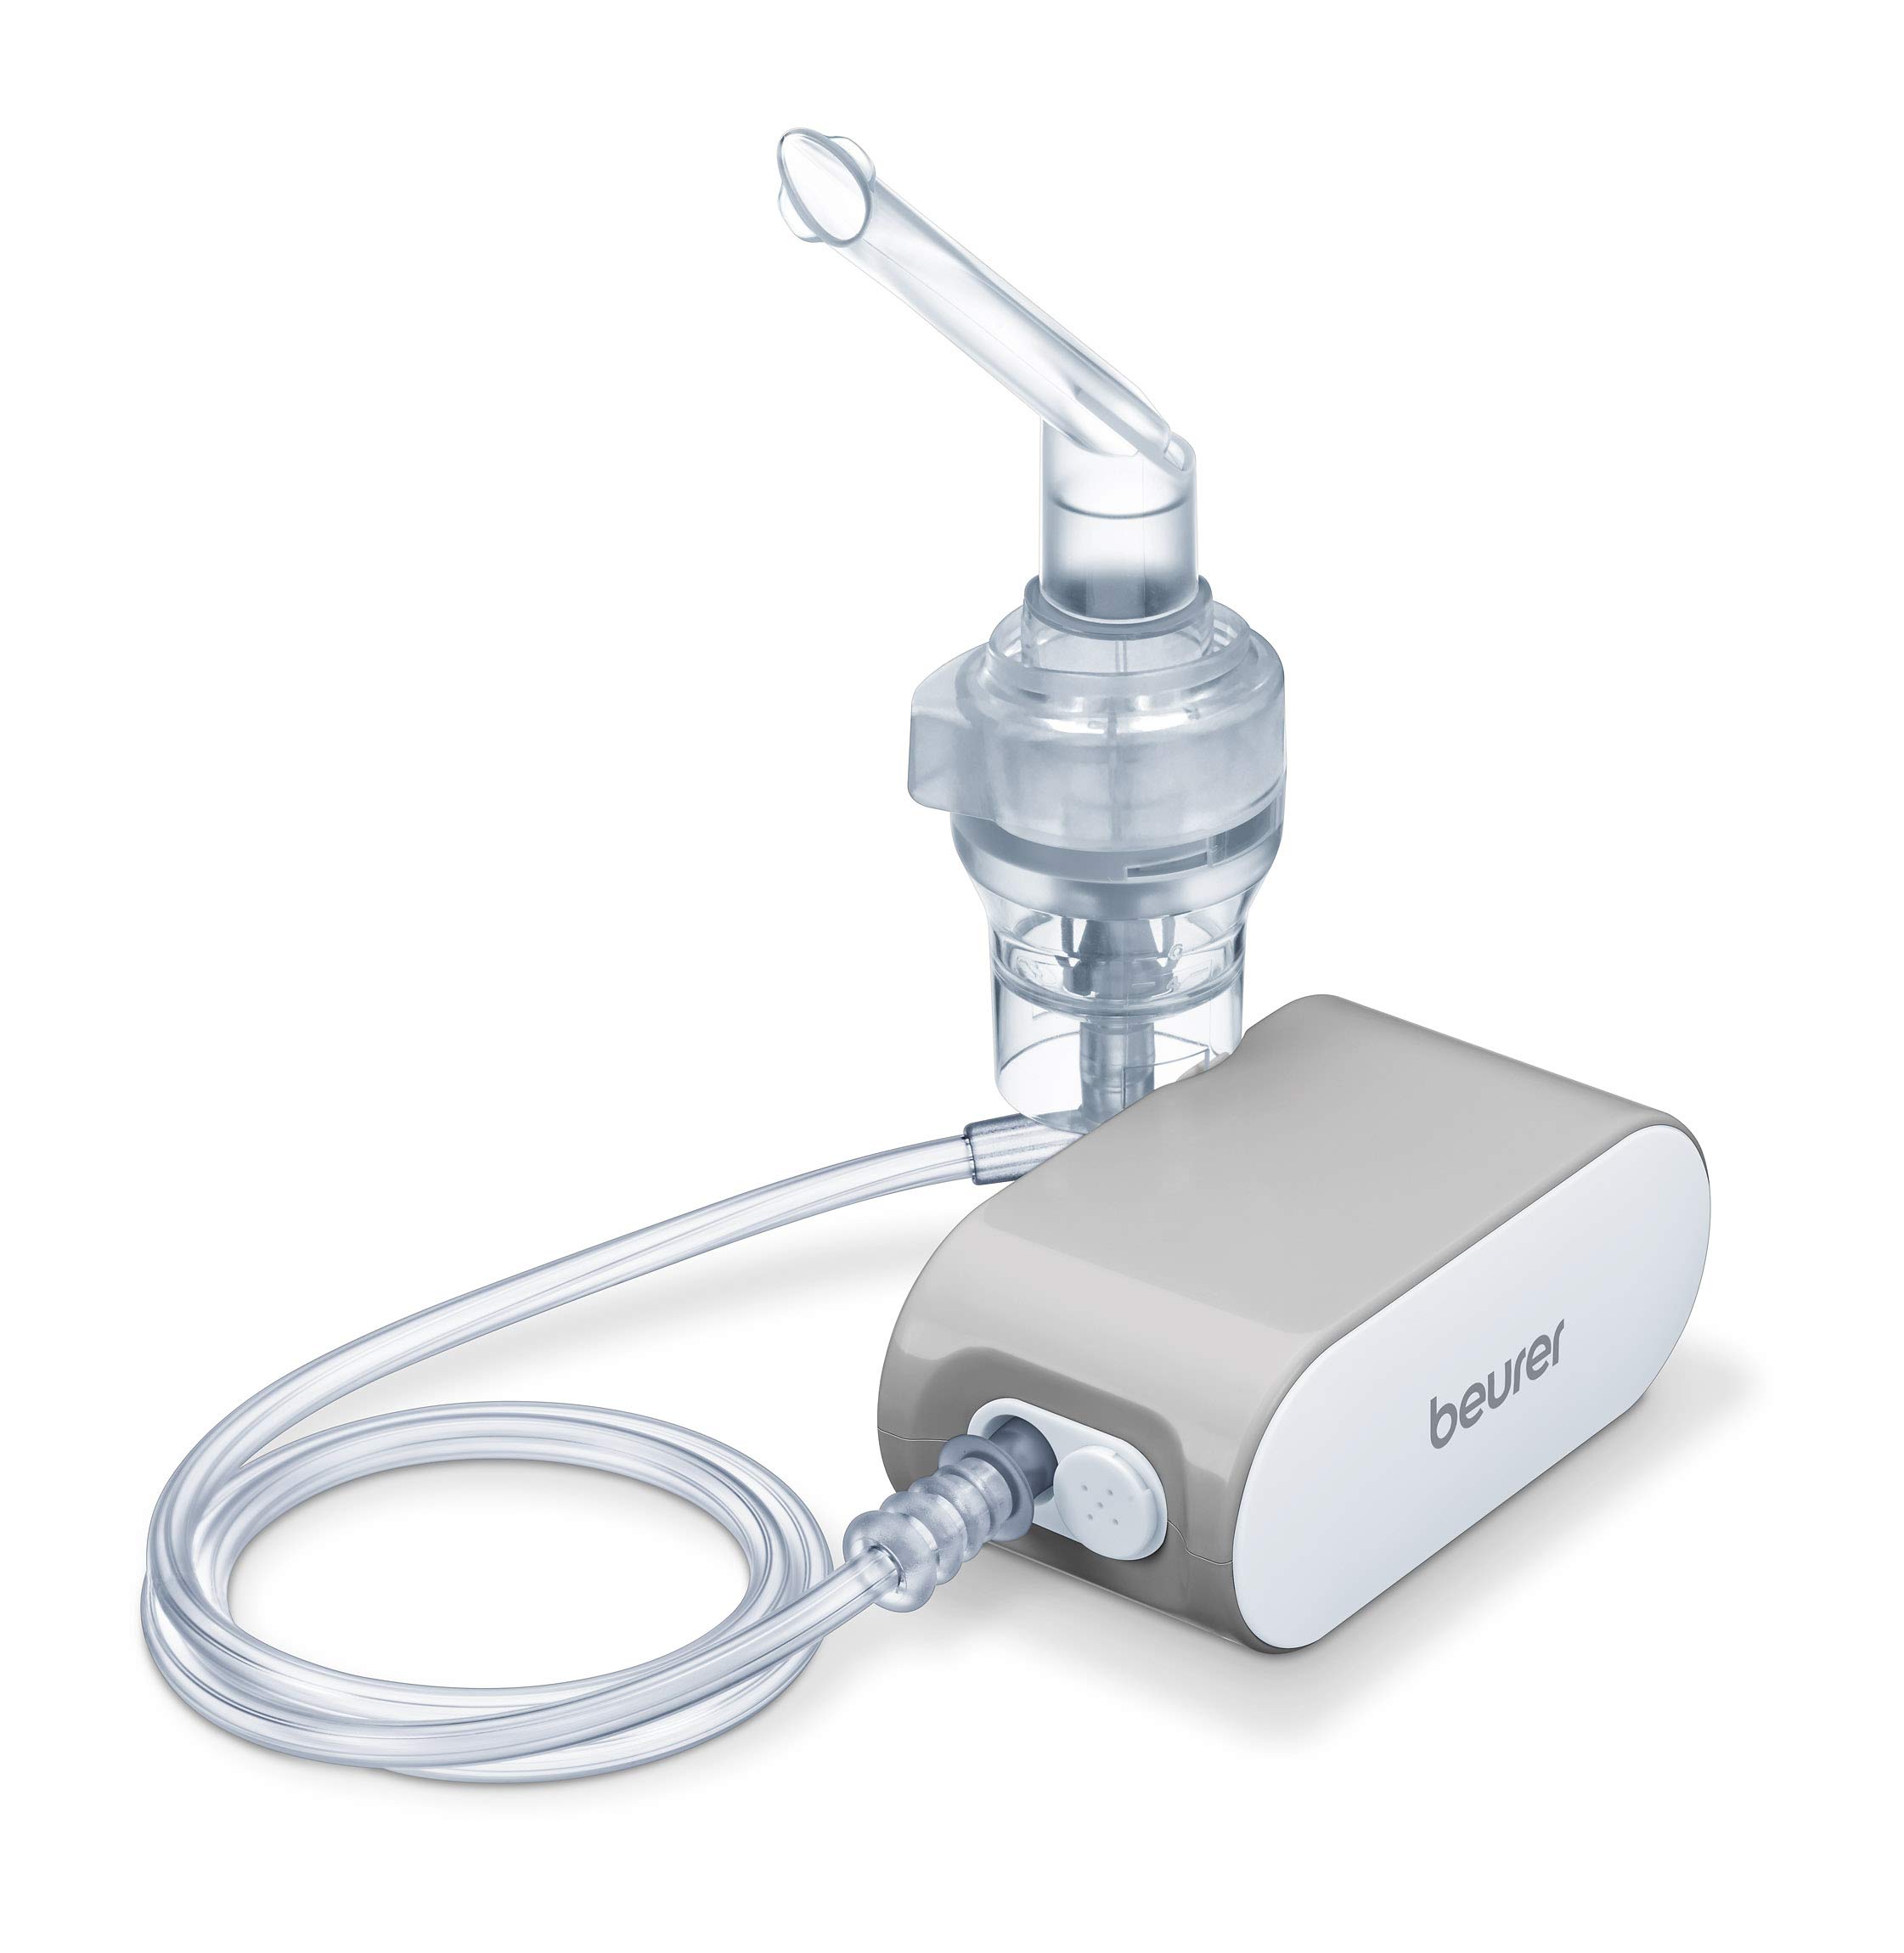 Beurer IH 58 Inhalator mit Kompressor-Drucklufttechnologie, leise, klein und leicht, zur Behandlung der oberen und unteren Atemwege mittels Verneblung von flüssigen Medikamenten